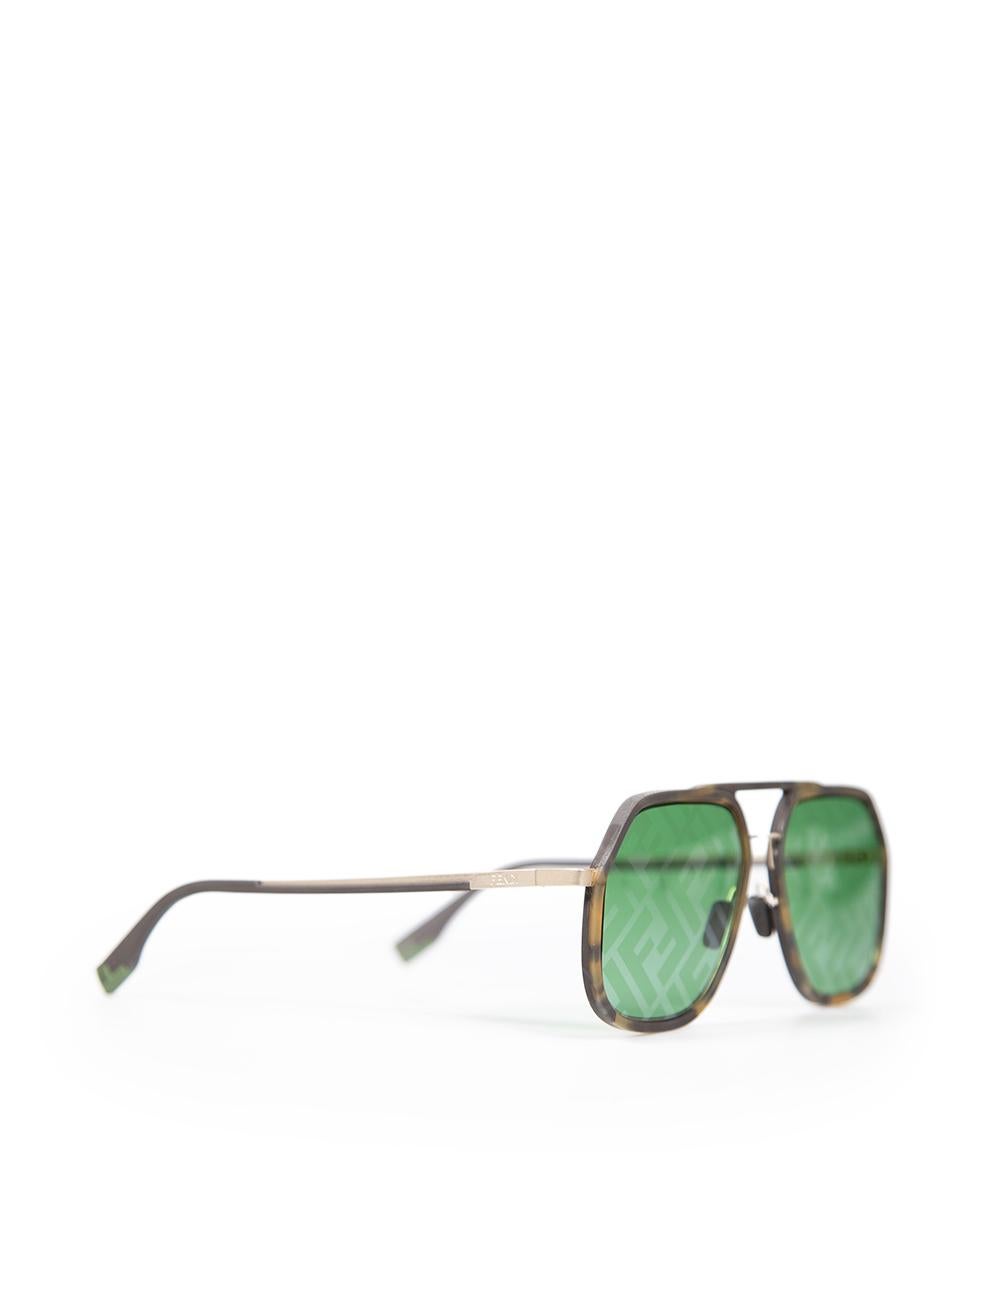 Fendi Green Mirror Navigator Sunglasses In New Condition For Sale In London, GB